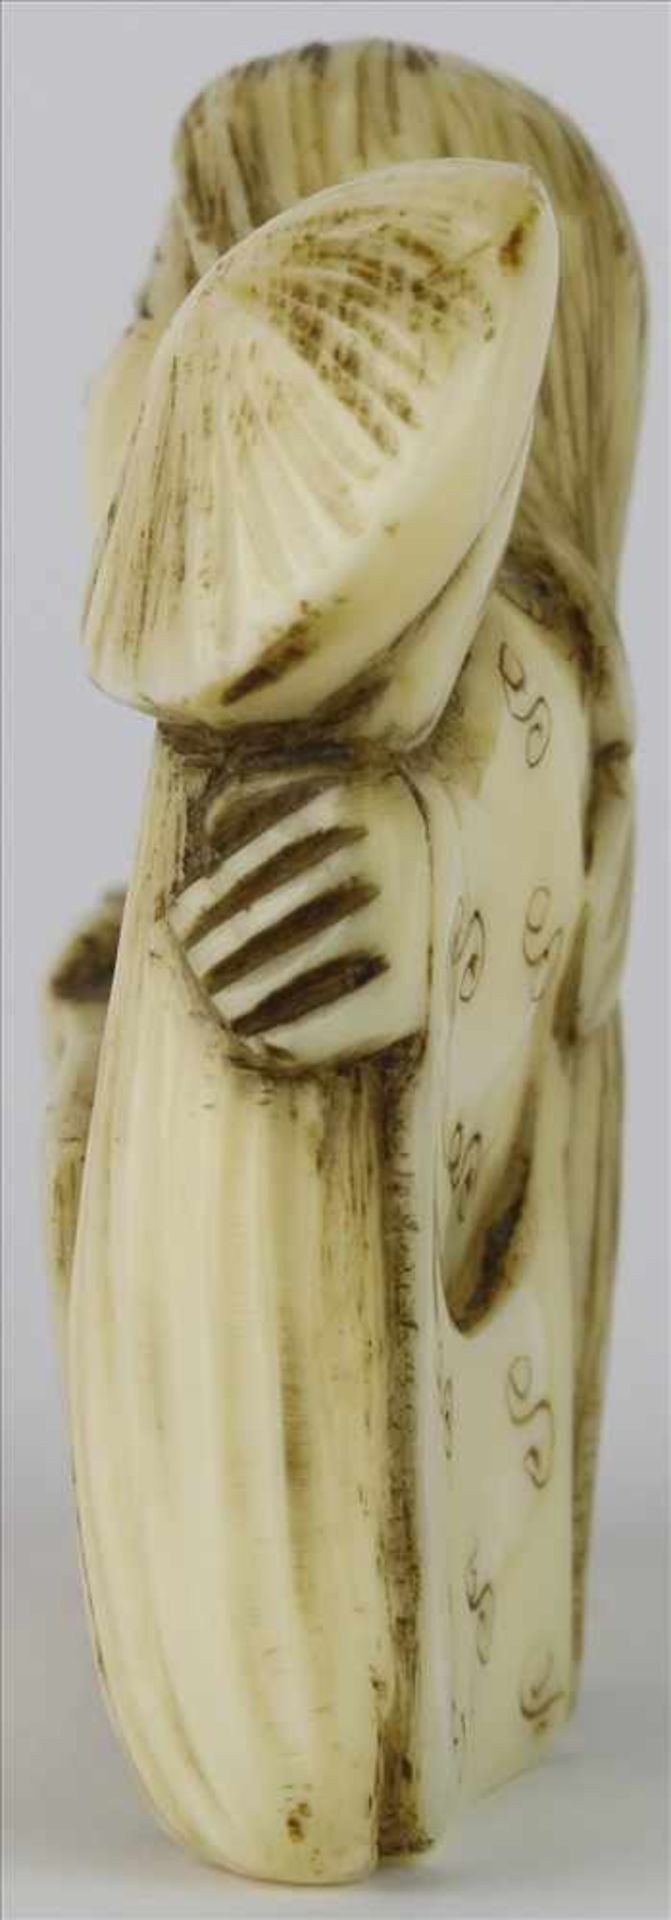 NetsukeJapan, späte Meiji-Zeit. Sitzende Dame. Elfenbein geschnitzt. Höhe ca. 3,2 cm. - Bild 4 aus 5